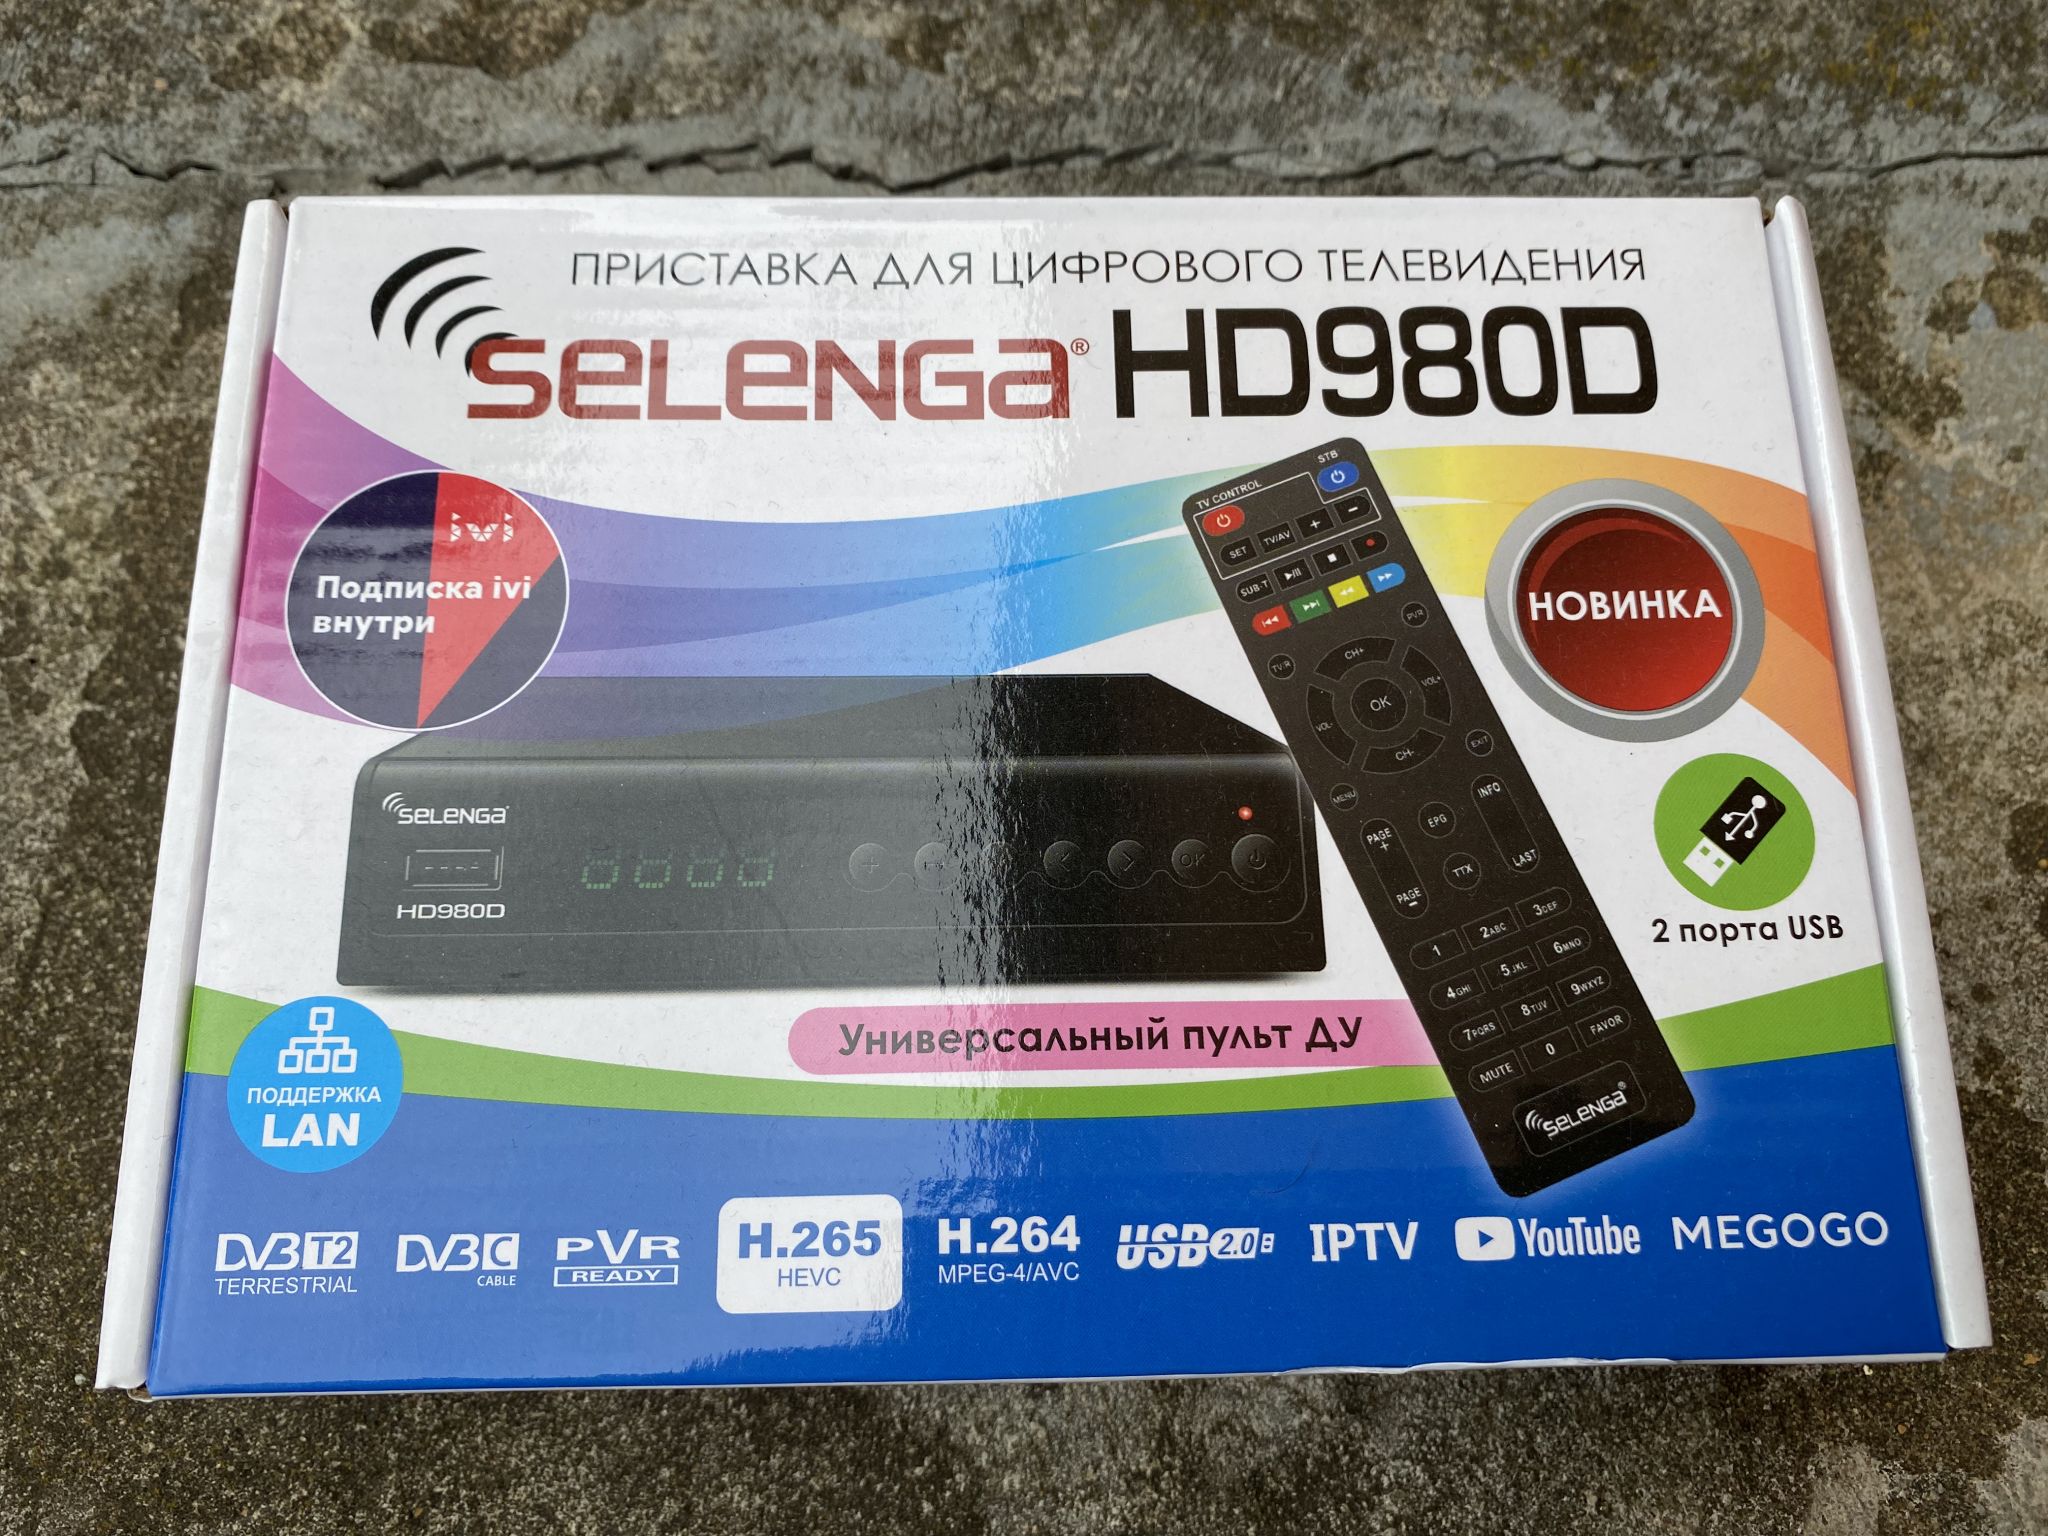 Цифровая приставка DVB-t2 Selenga hd980d